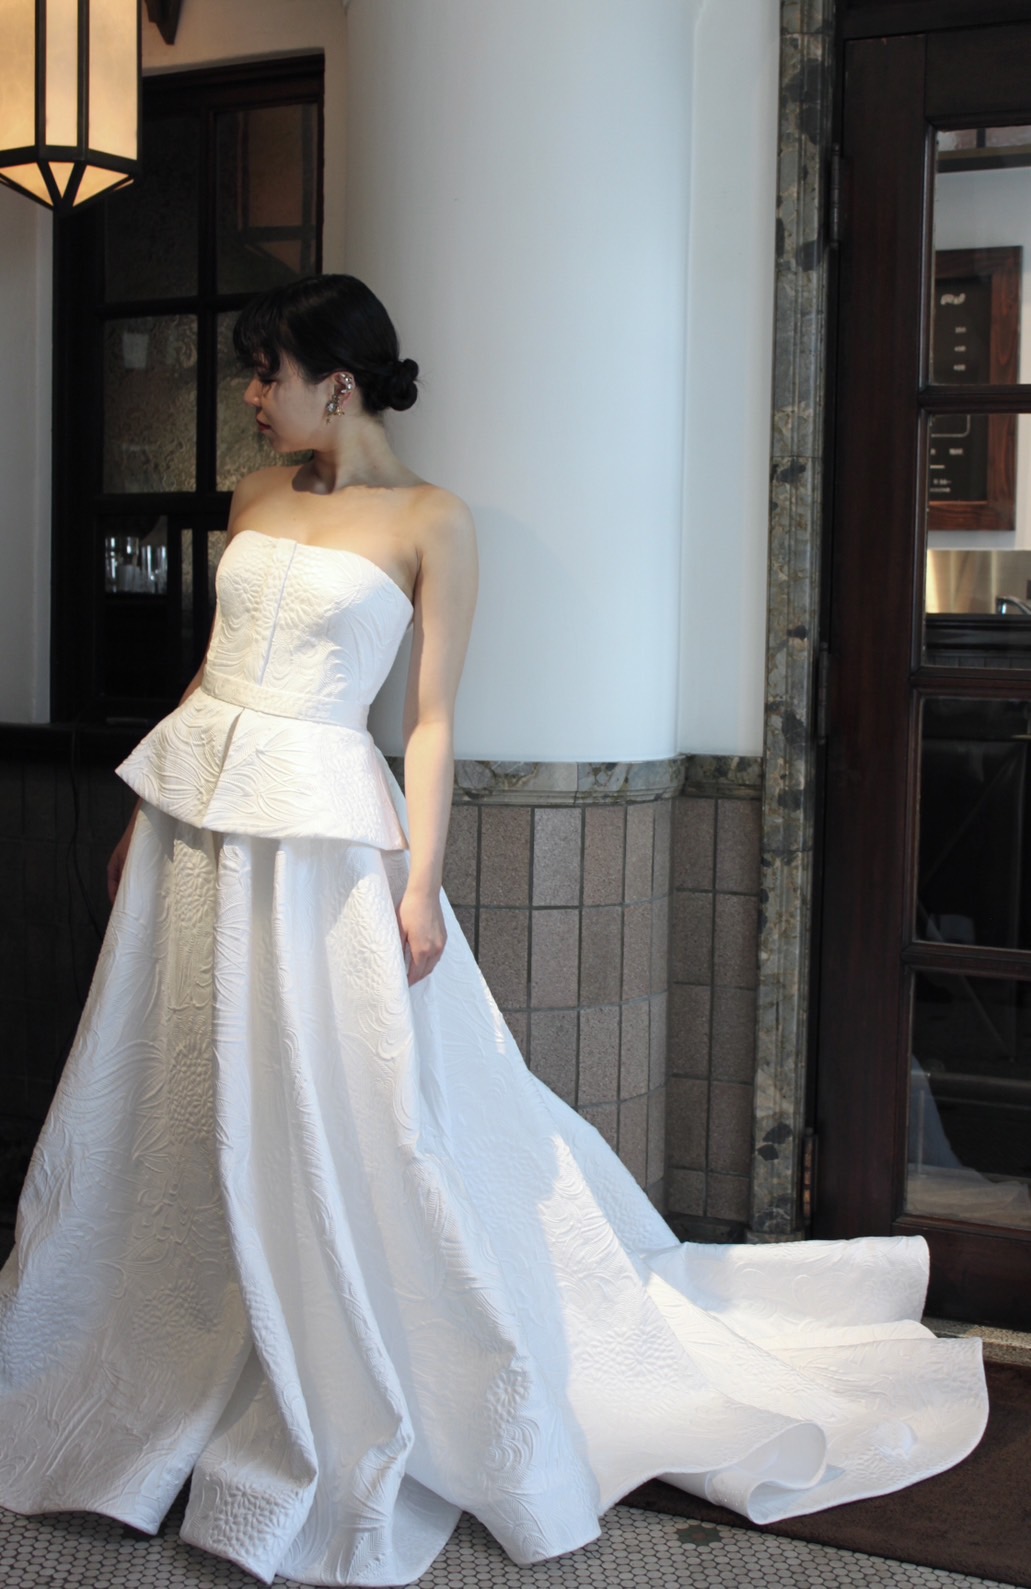 モダンな結婚式場におすすめのトリートで人気のナイーム カーンのシルクジャガード素材のＡラインのウェディングドレス